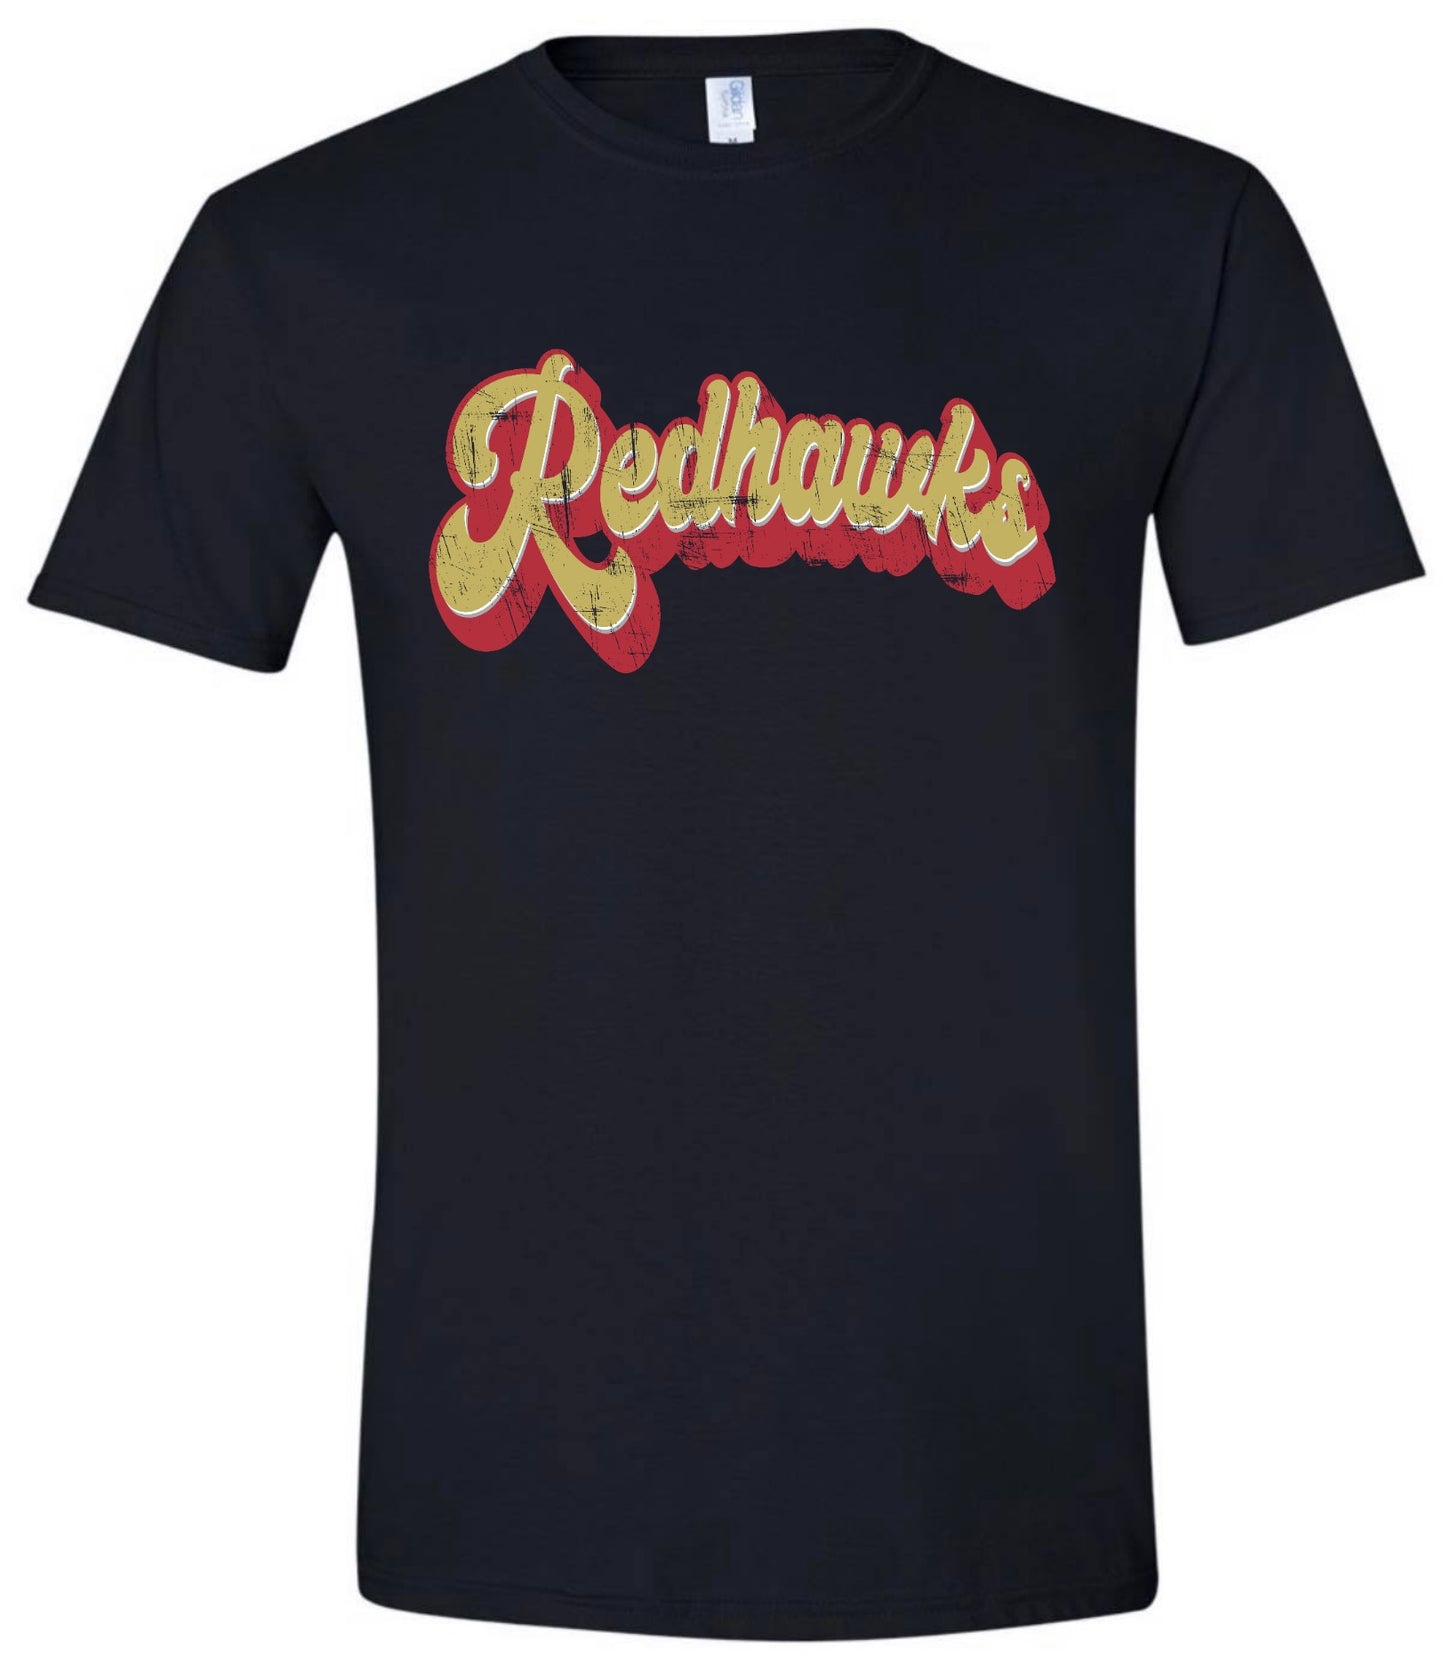 Distressed Retro Redhawks Tshirt